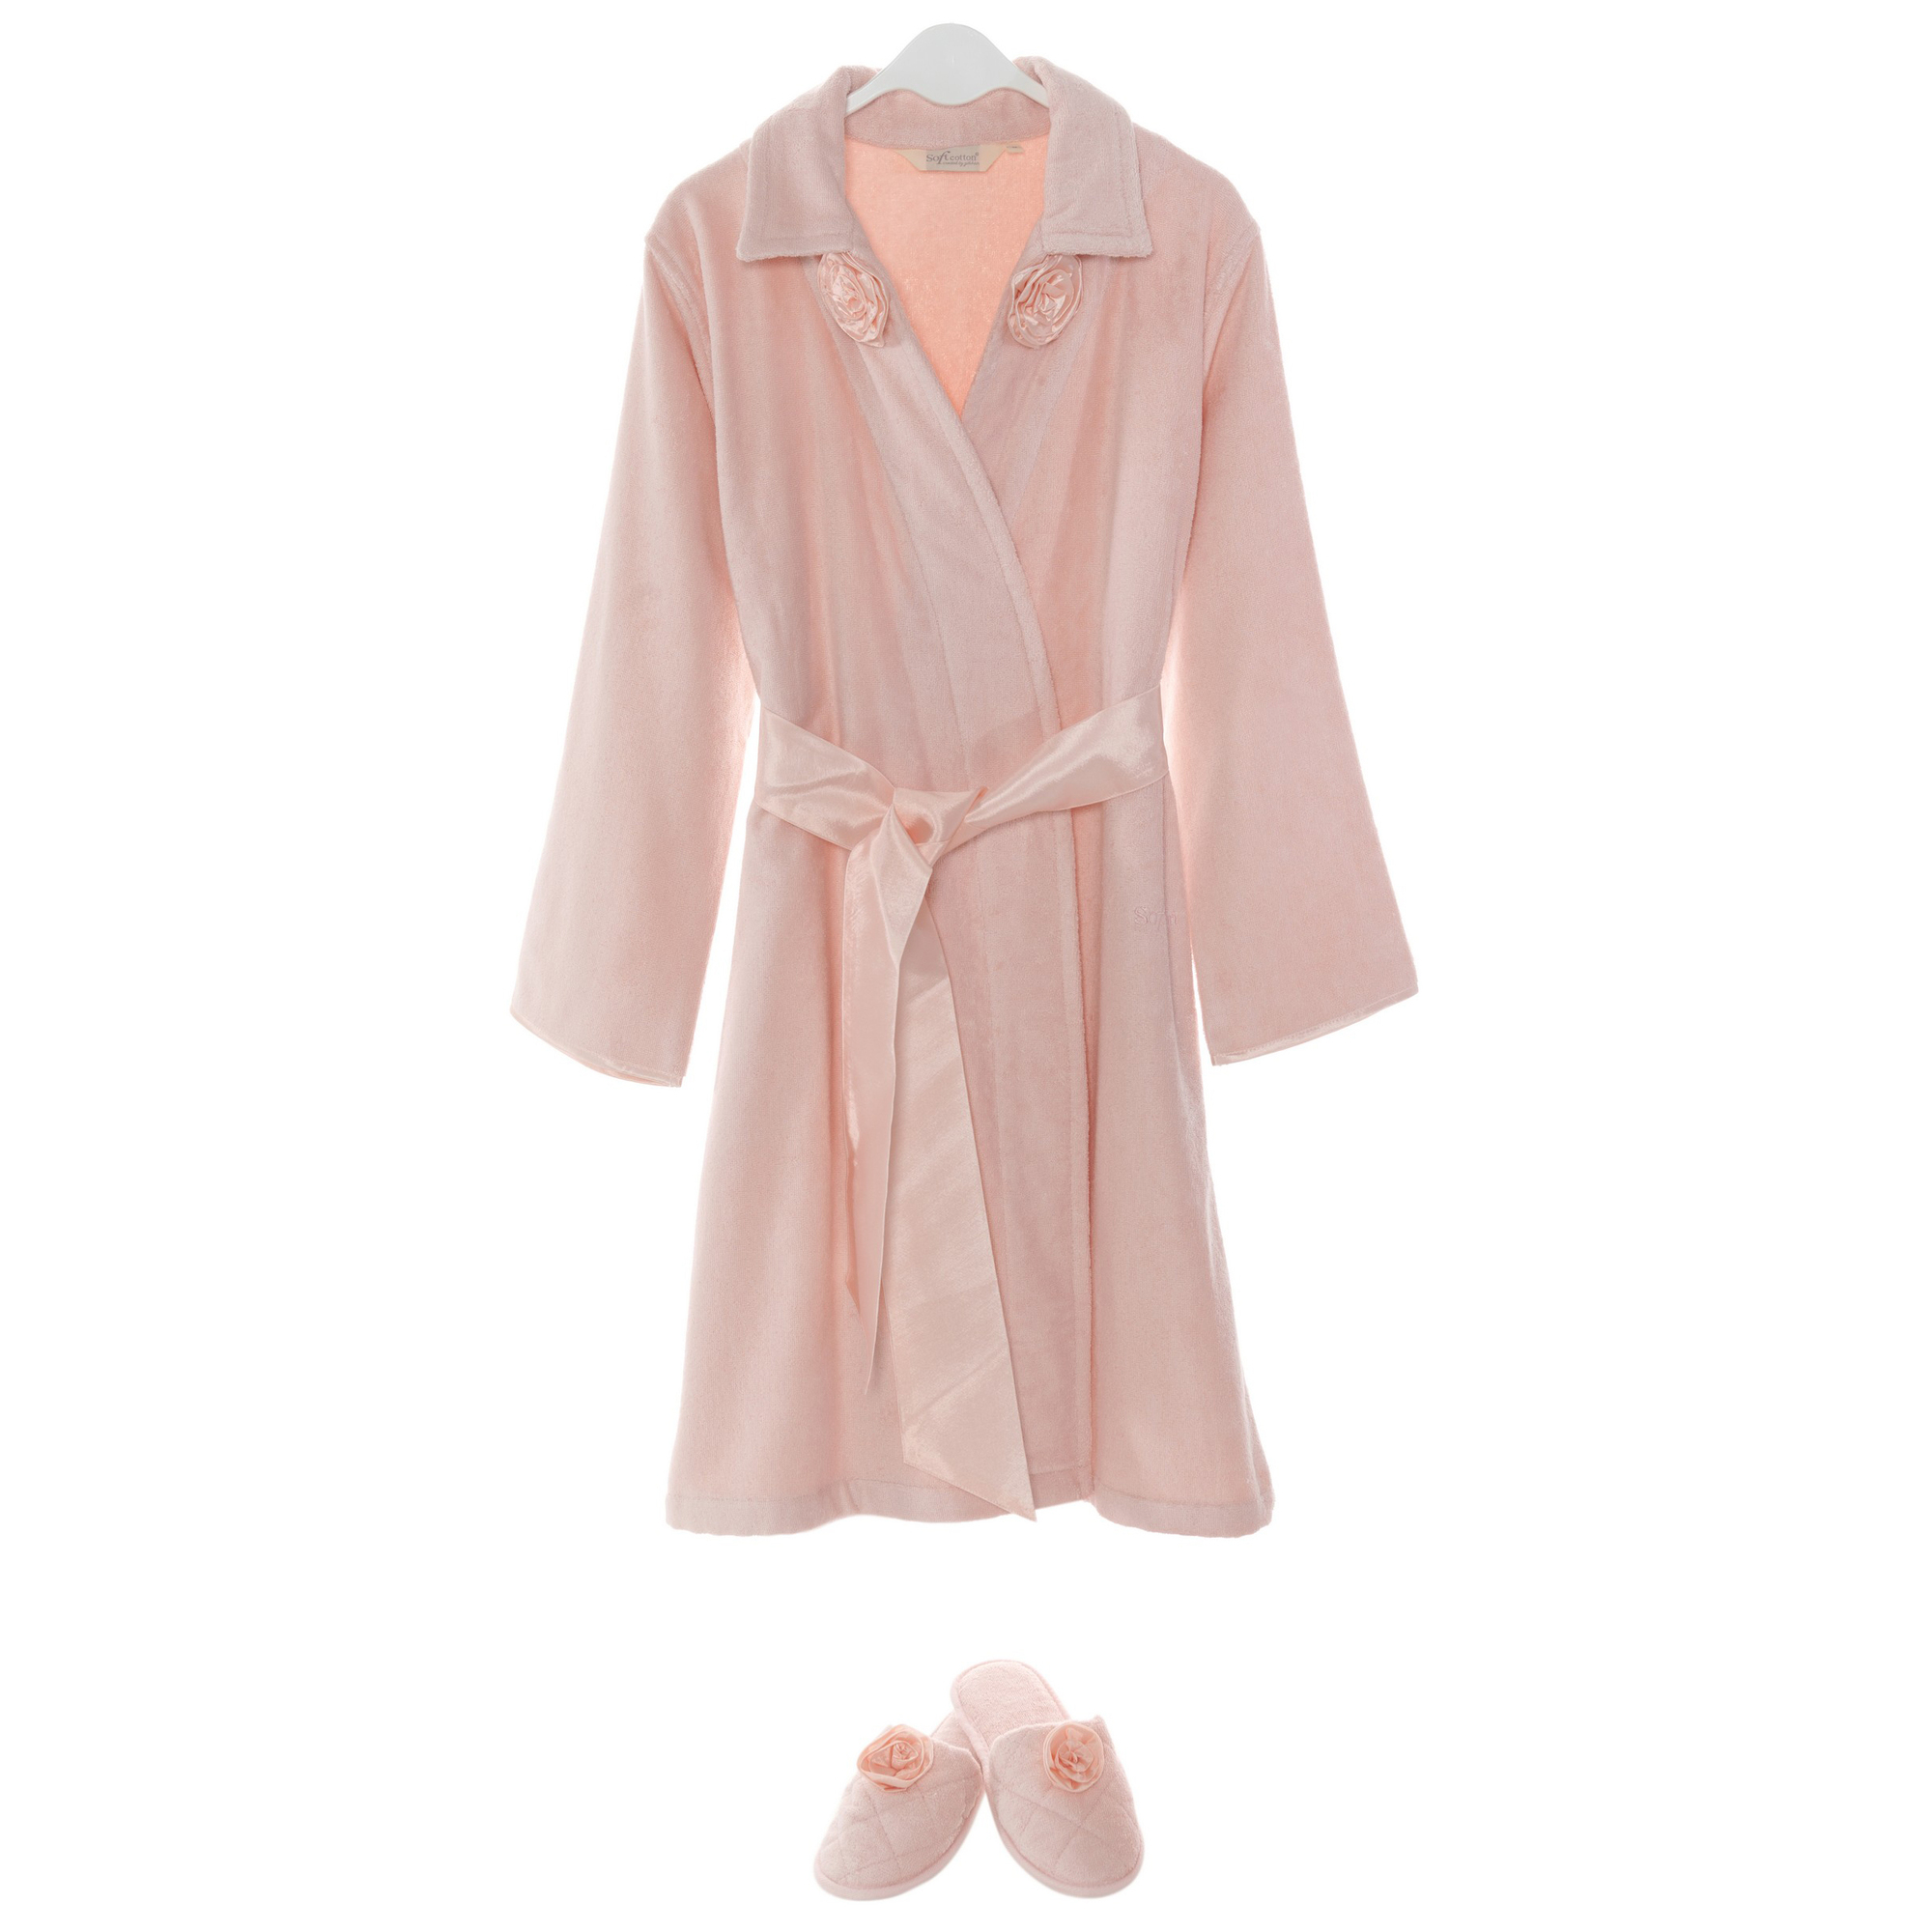 Банный комплект с халатом Trish цвет: розовый (L) Soft cotton